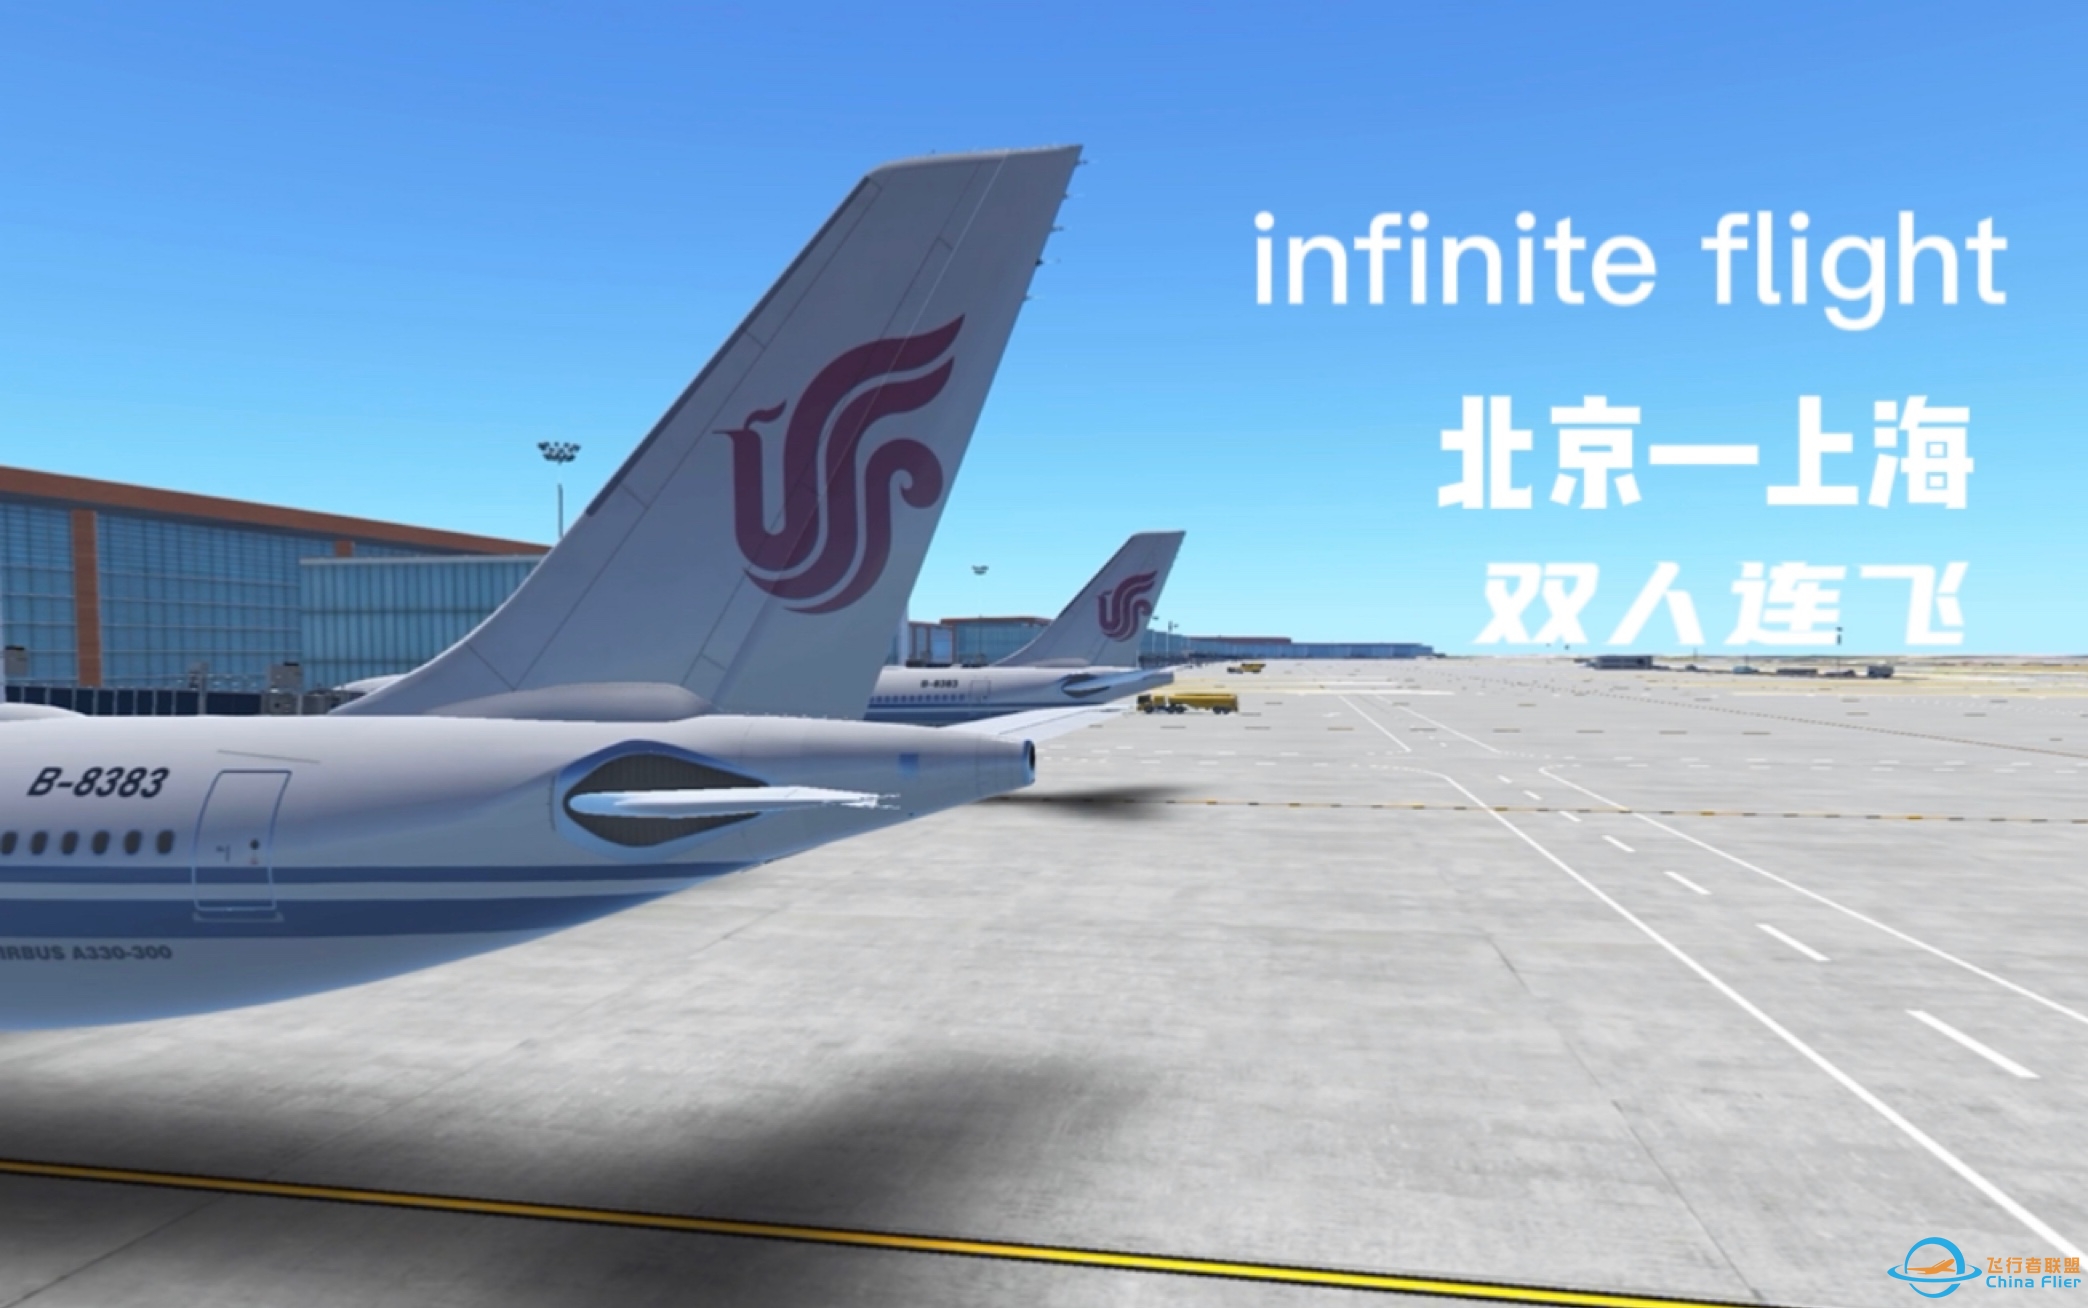 「infinite flight」up第一次连飞！北京—上海-6584 